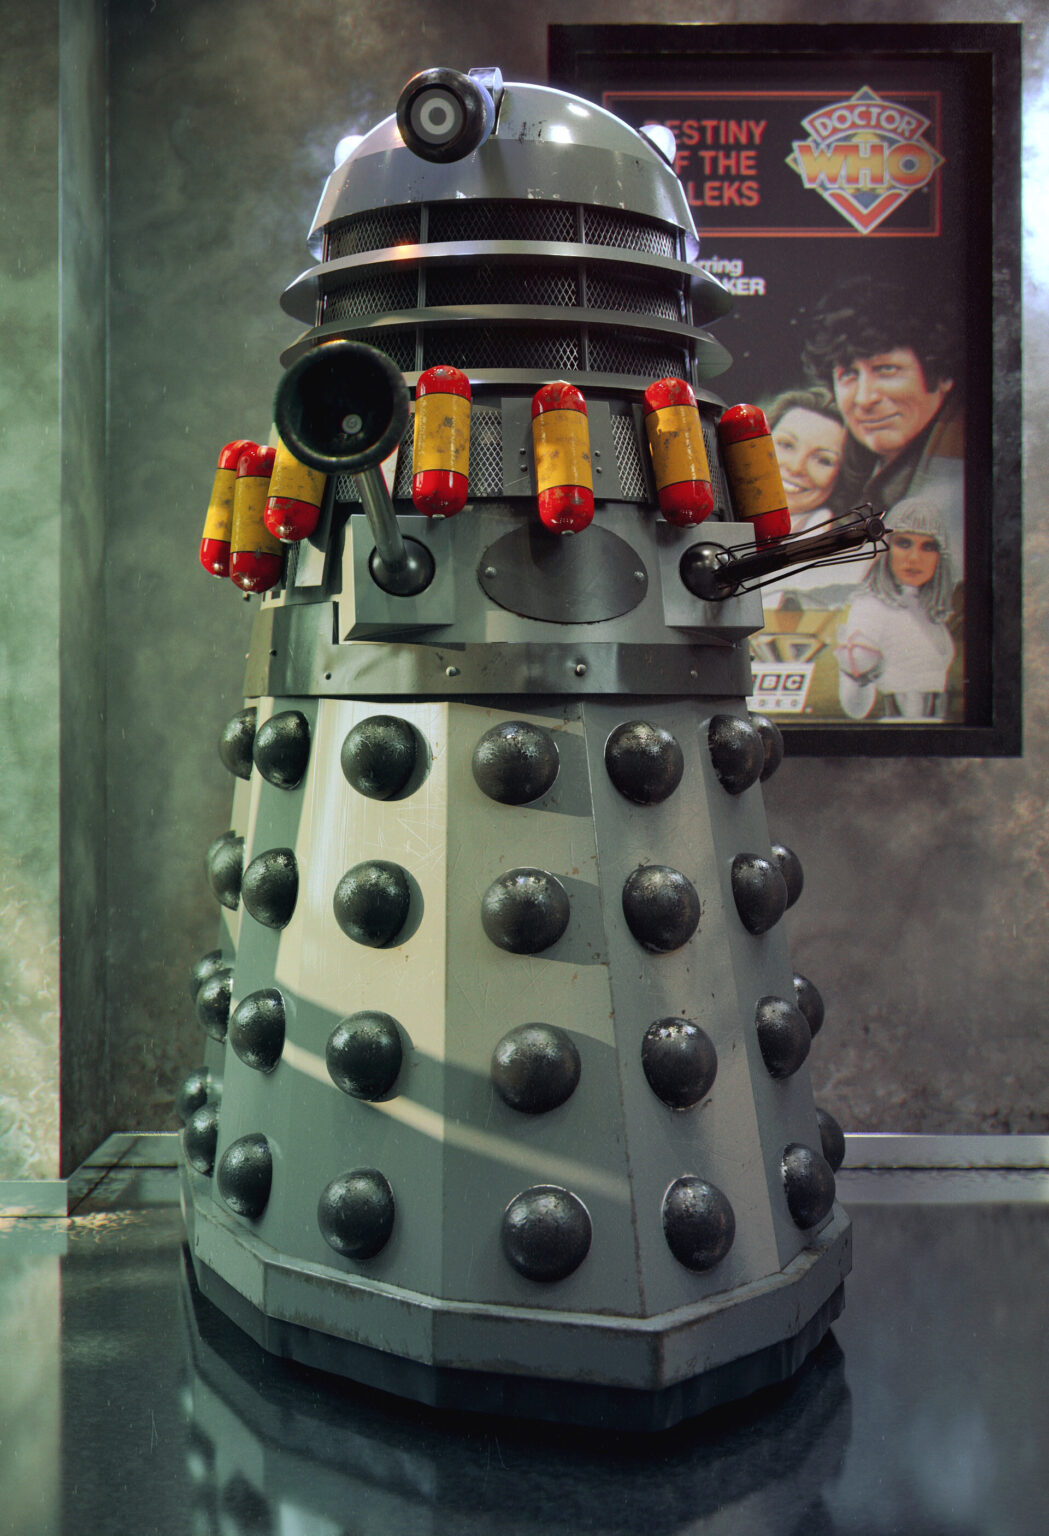 MK3 Type III Destiny Dalek - The Daleks era 1 - By Phil Shaw